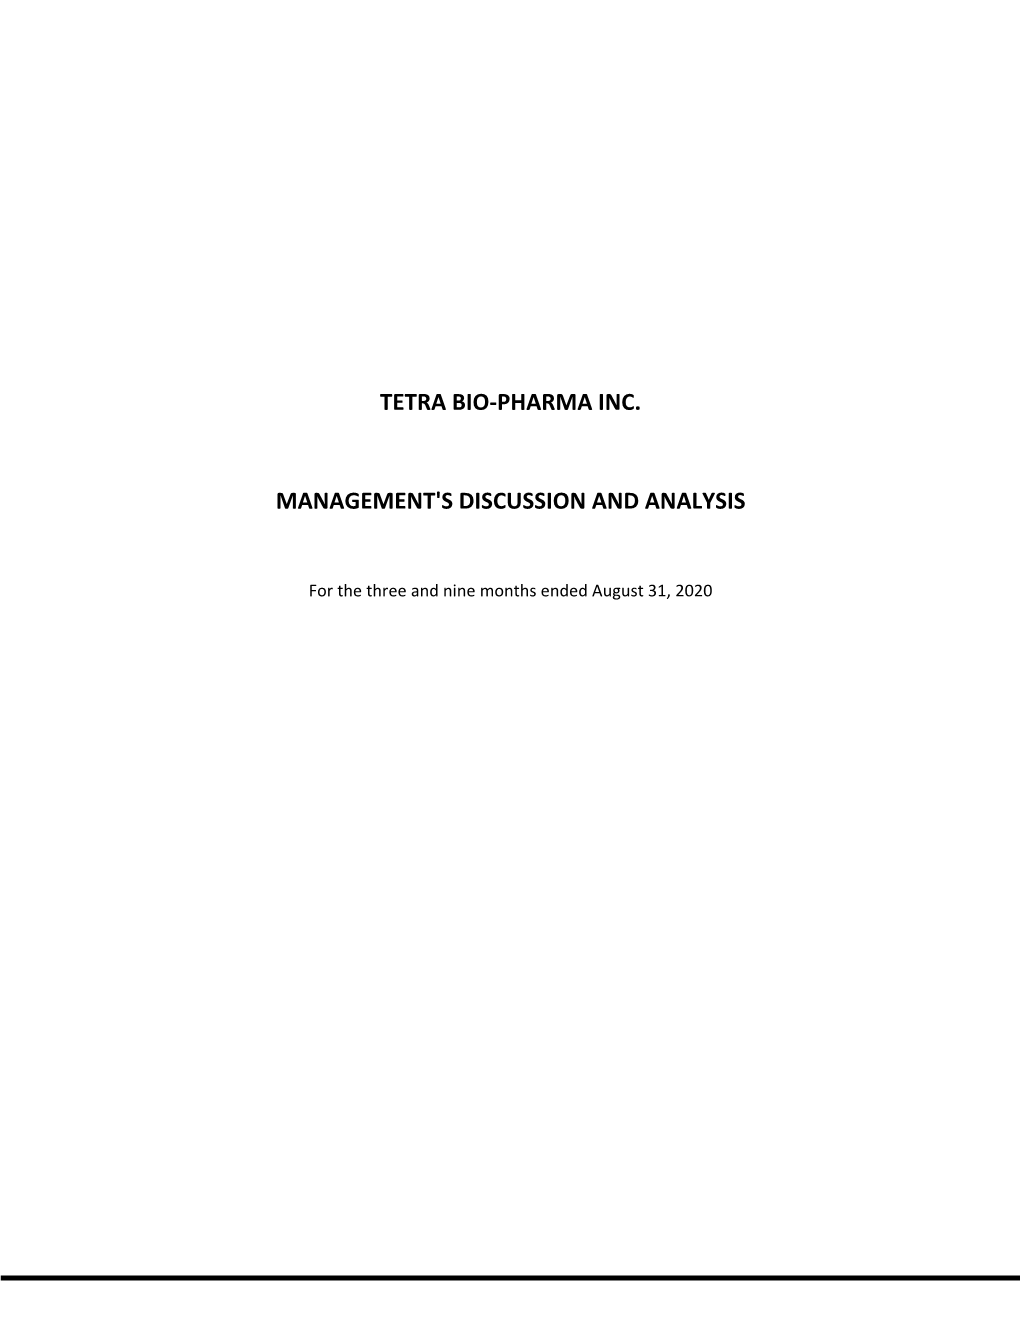 Tetra Bio-Pharma Inc. Management's Discussion